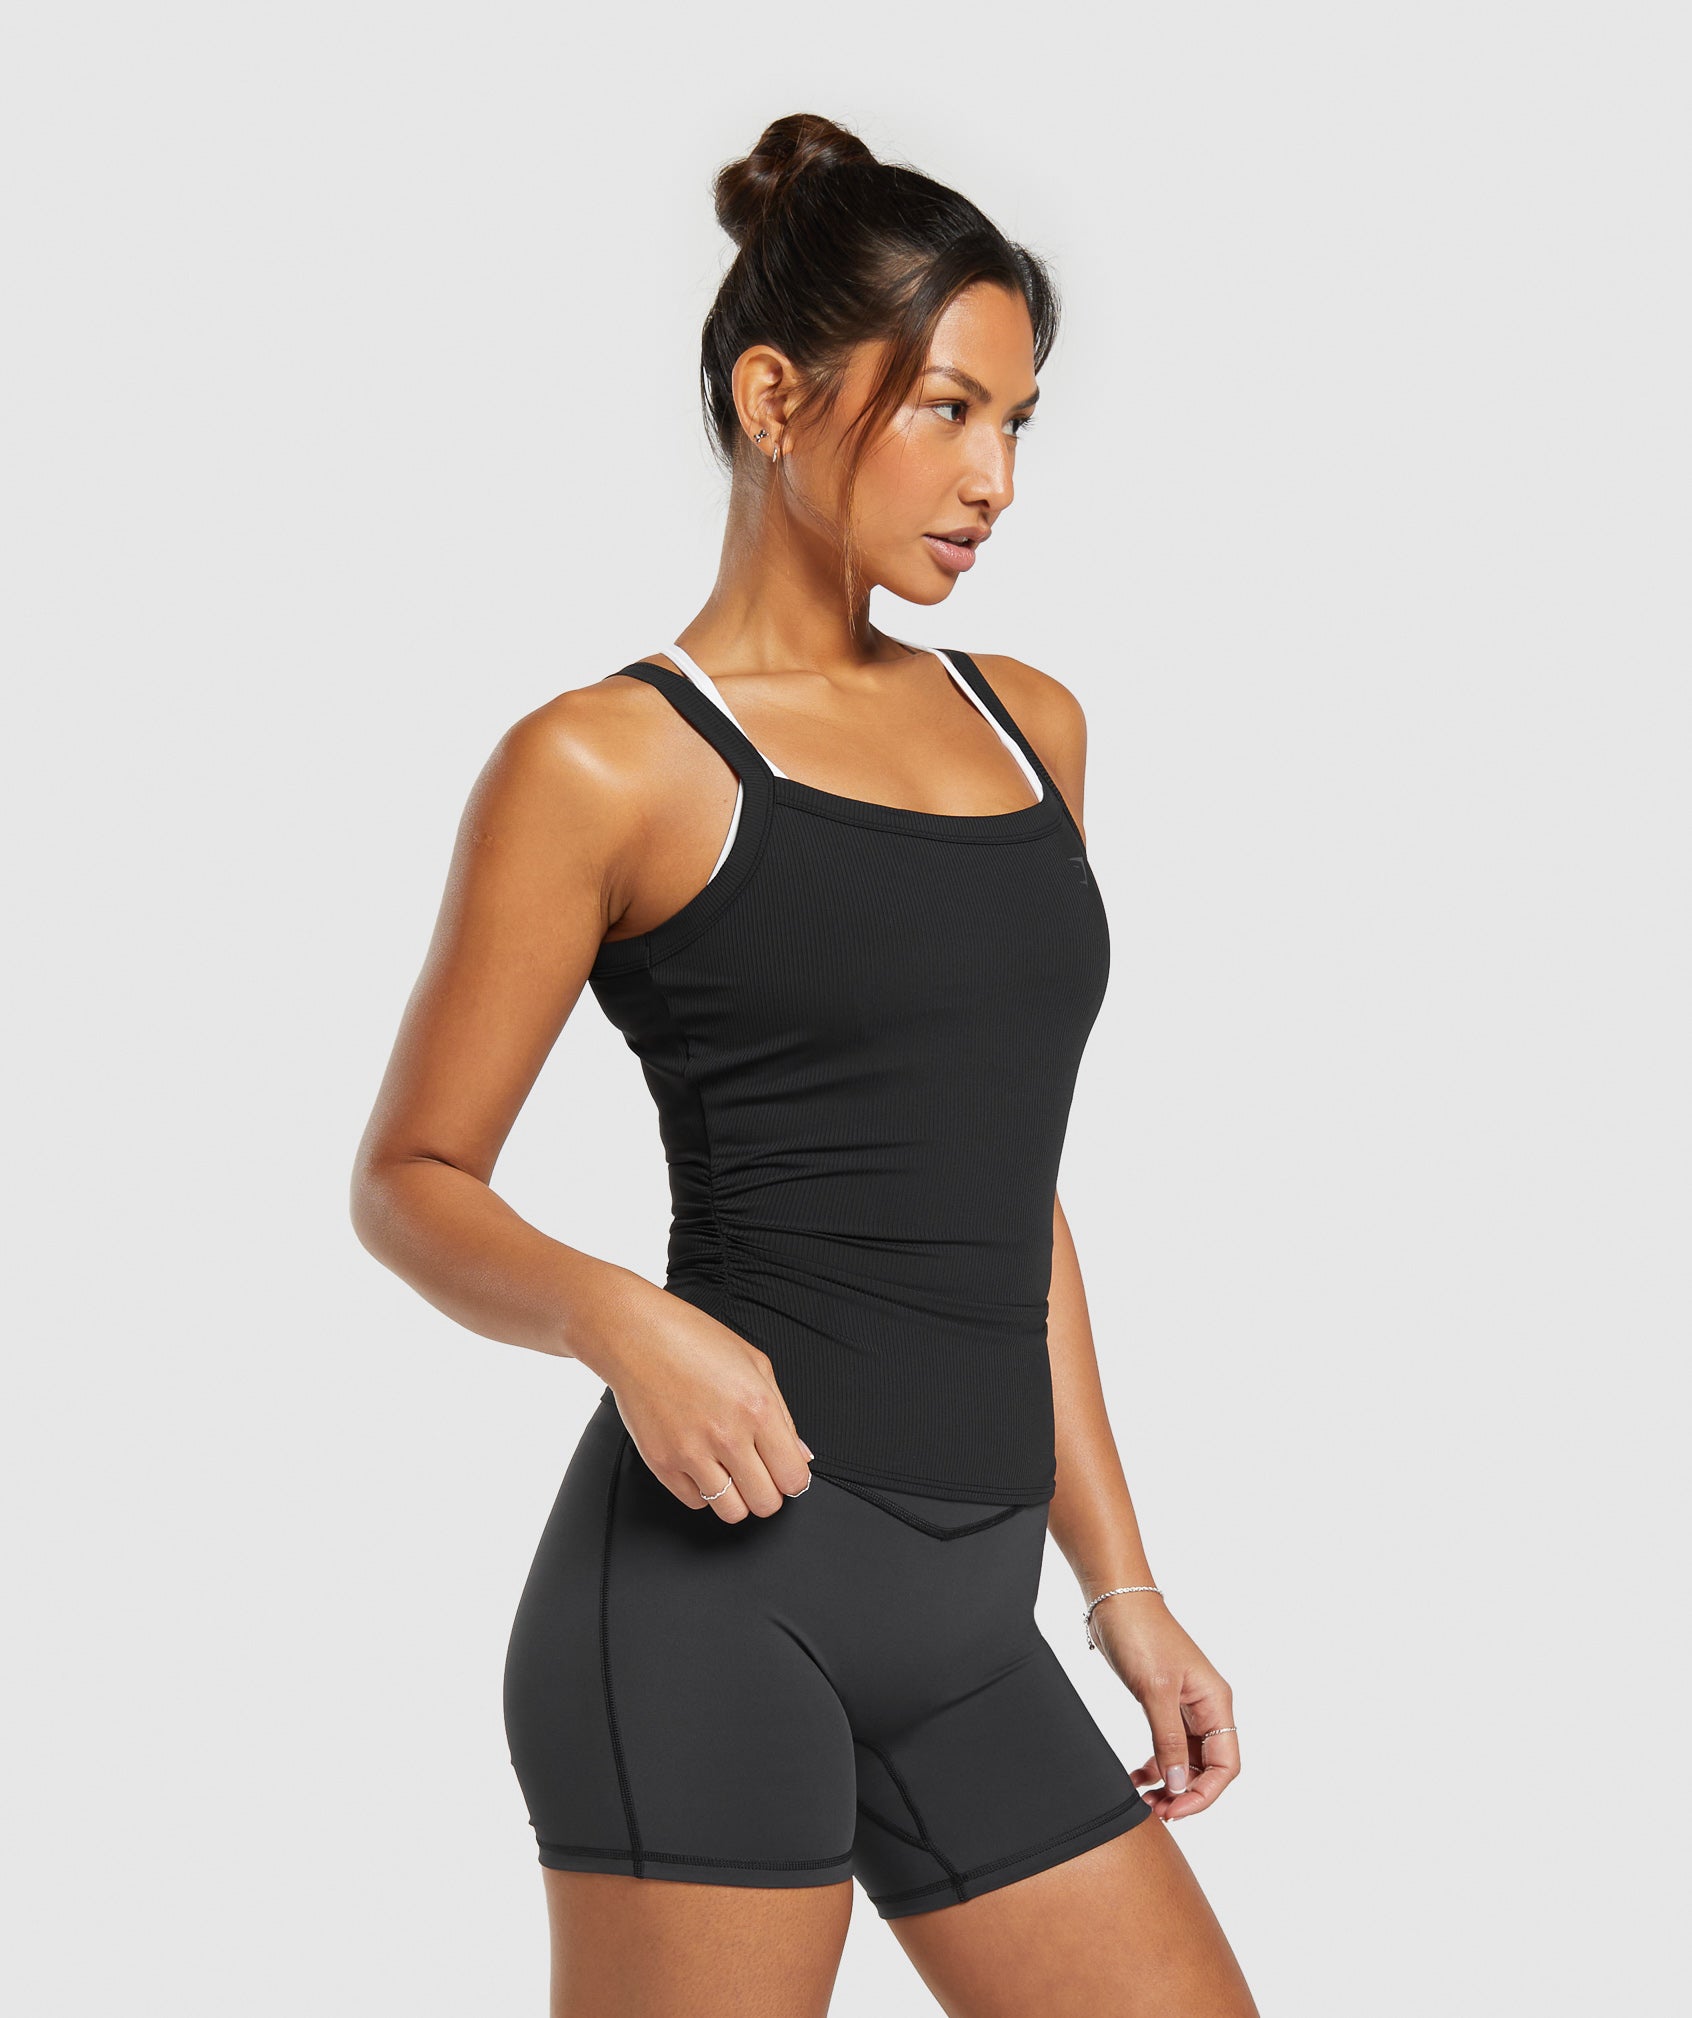 Ladies Racerback Slim Fit Sports T-Shirt Fitness Cami Vest Tank